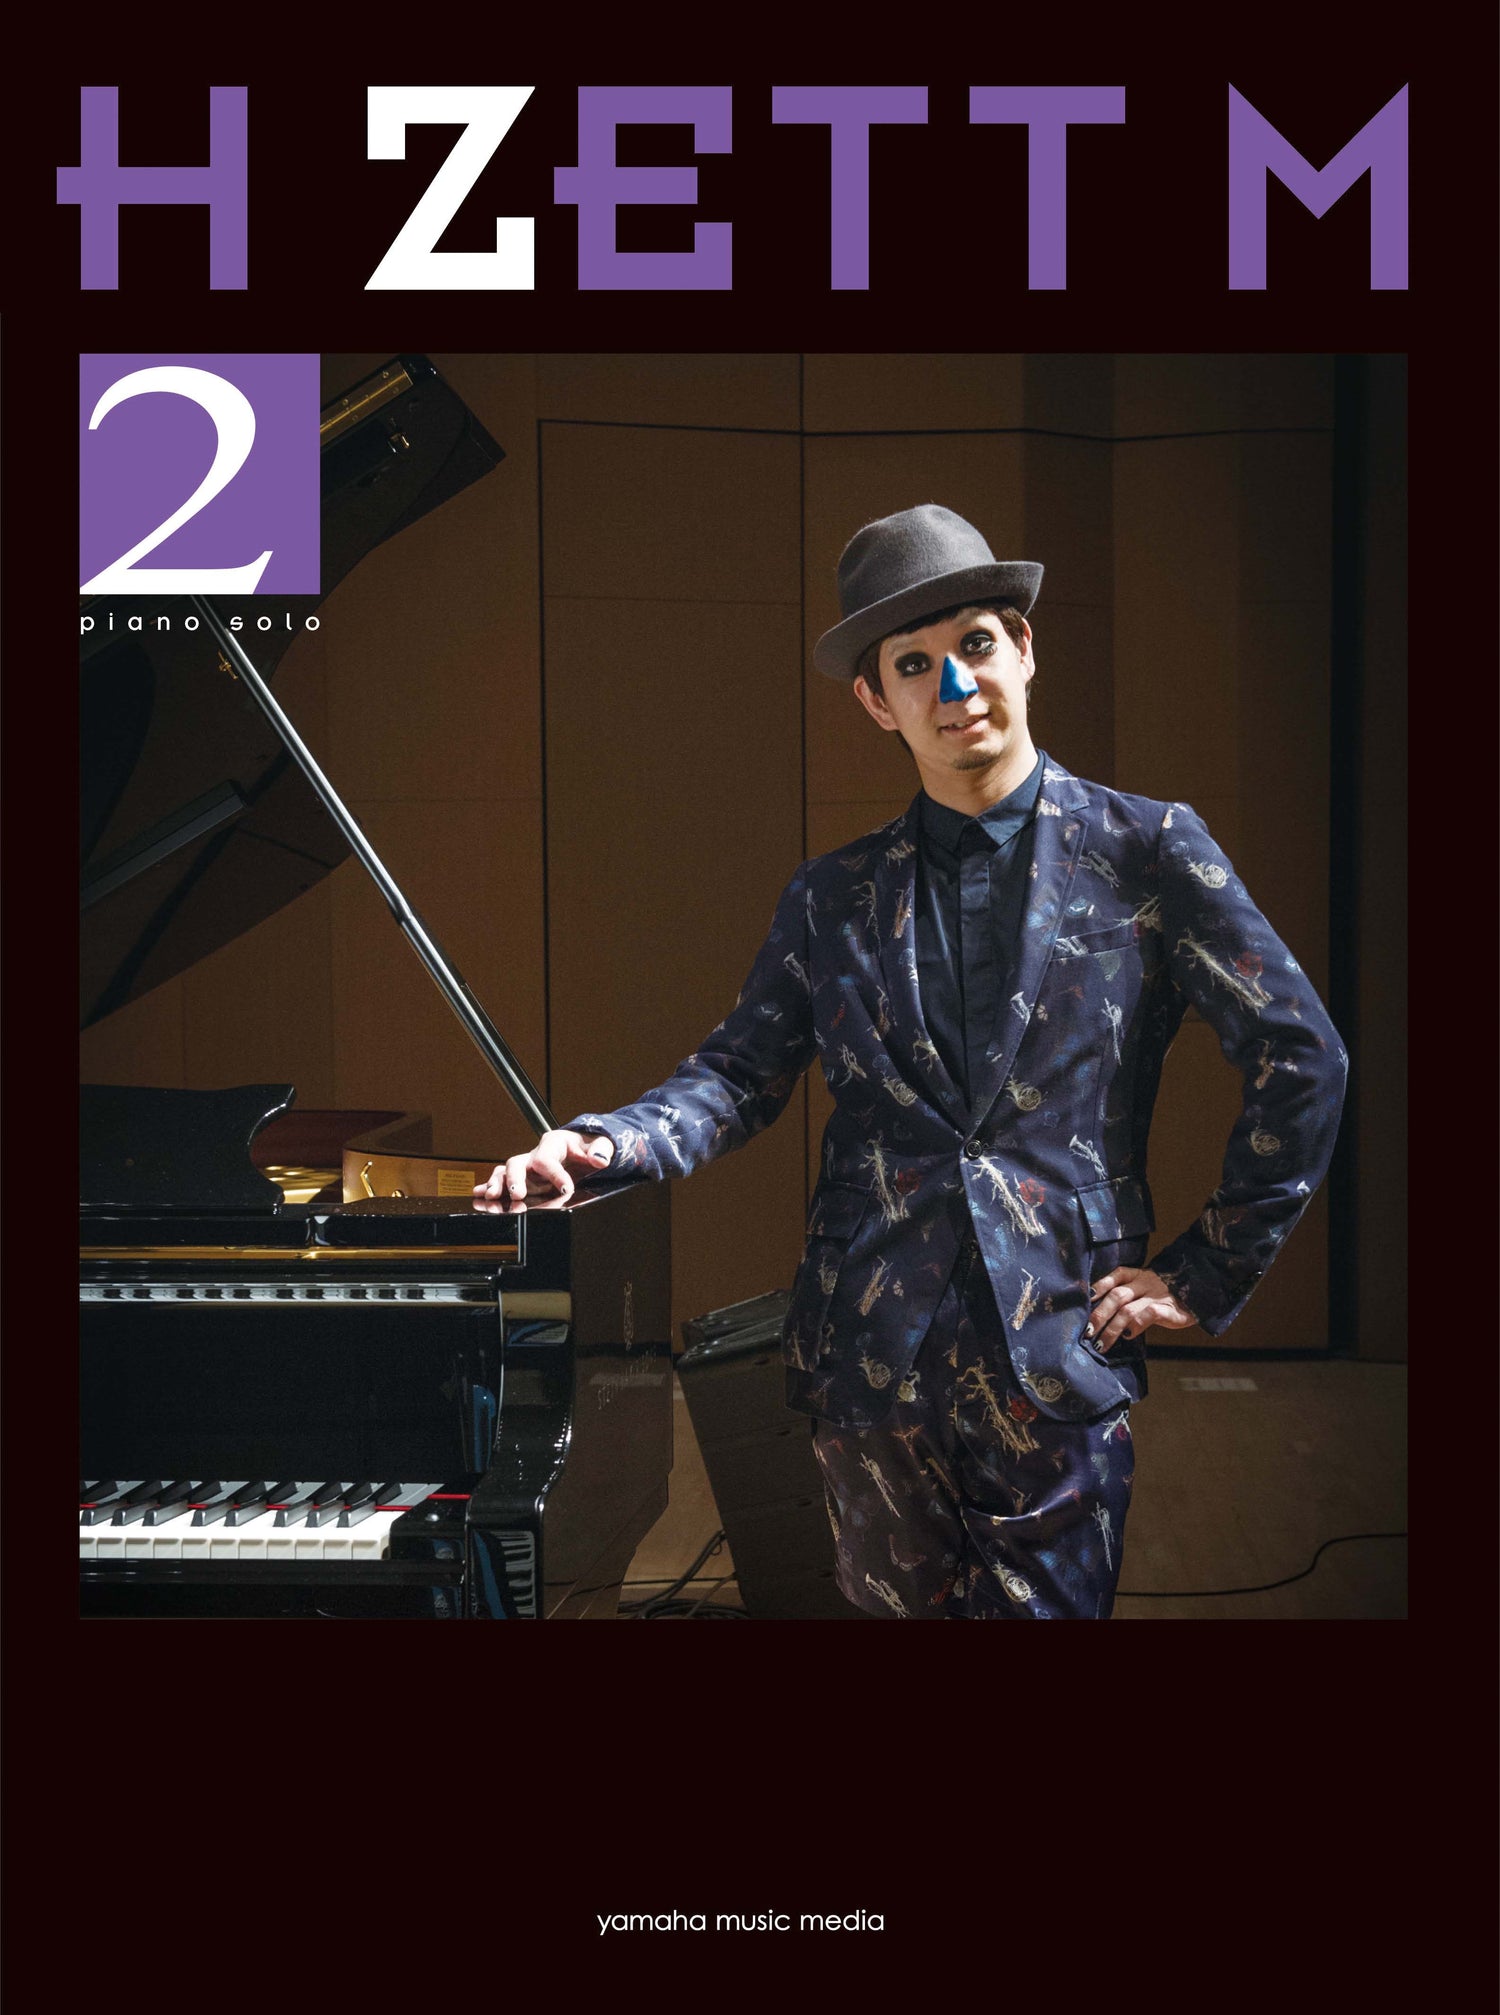 ピアノソロ H ZETT M (2)